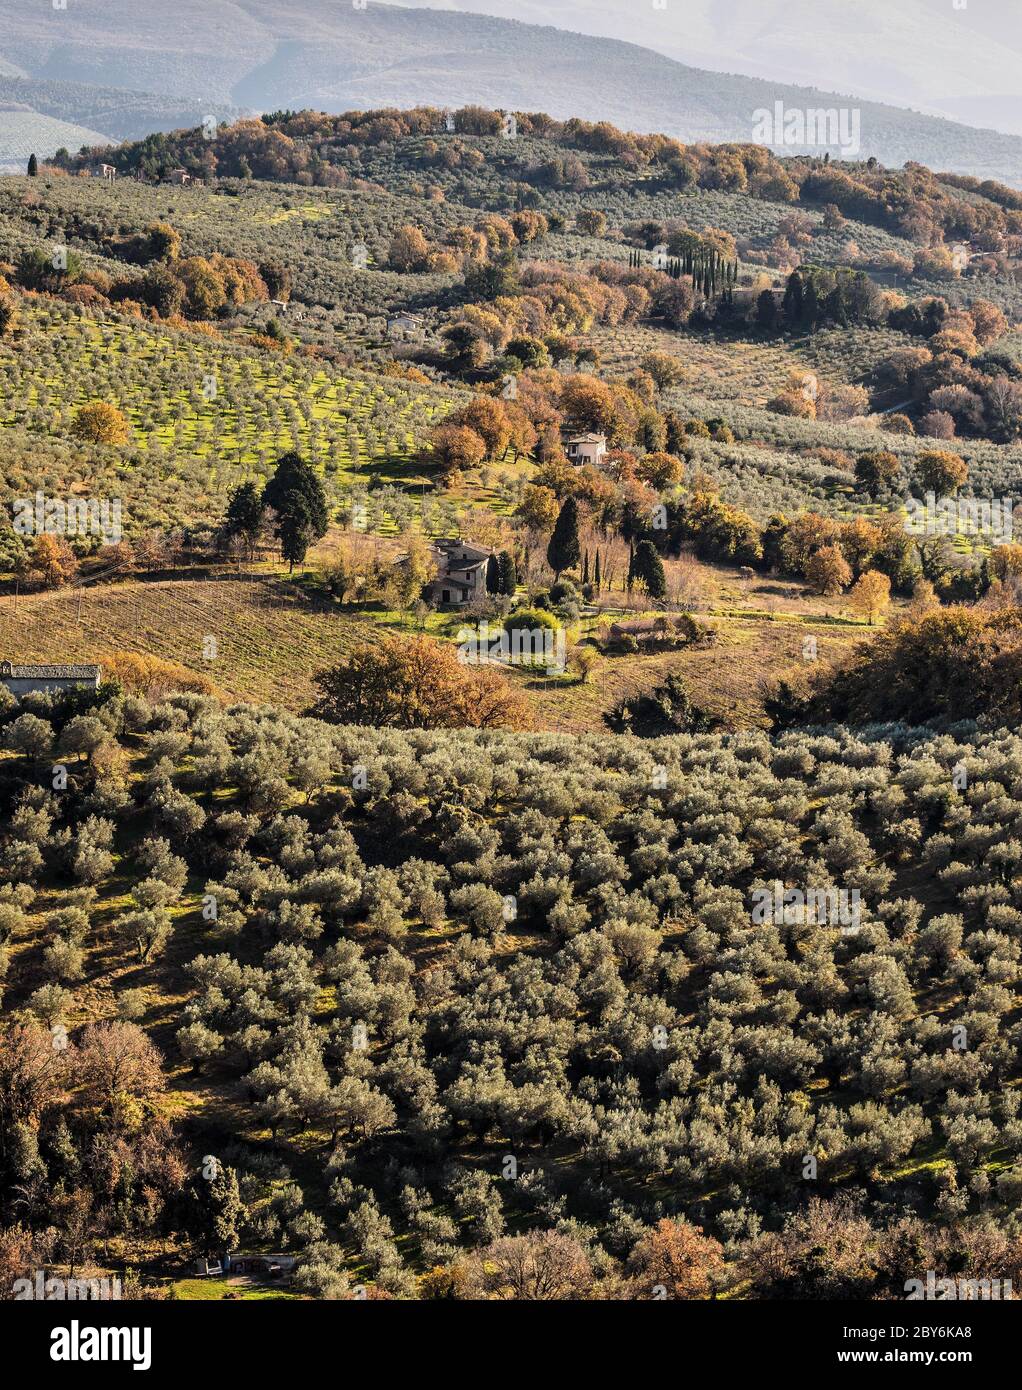 Suggestiva vista sulle colline che si vedono dal Monte Subasio, in Umbria, Italia. Alberi, campi, case, oliveti Foto Stock